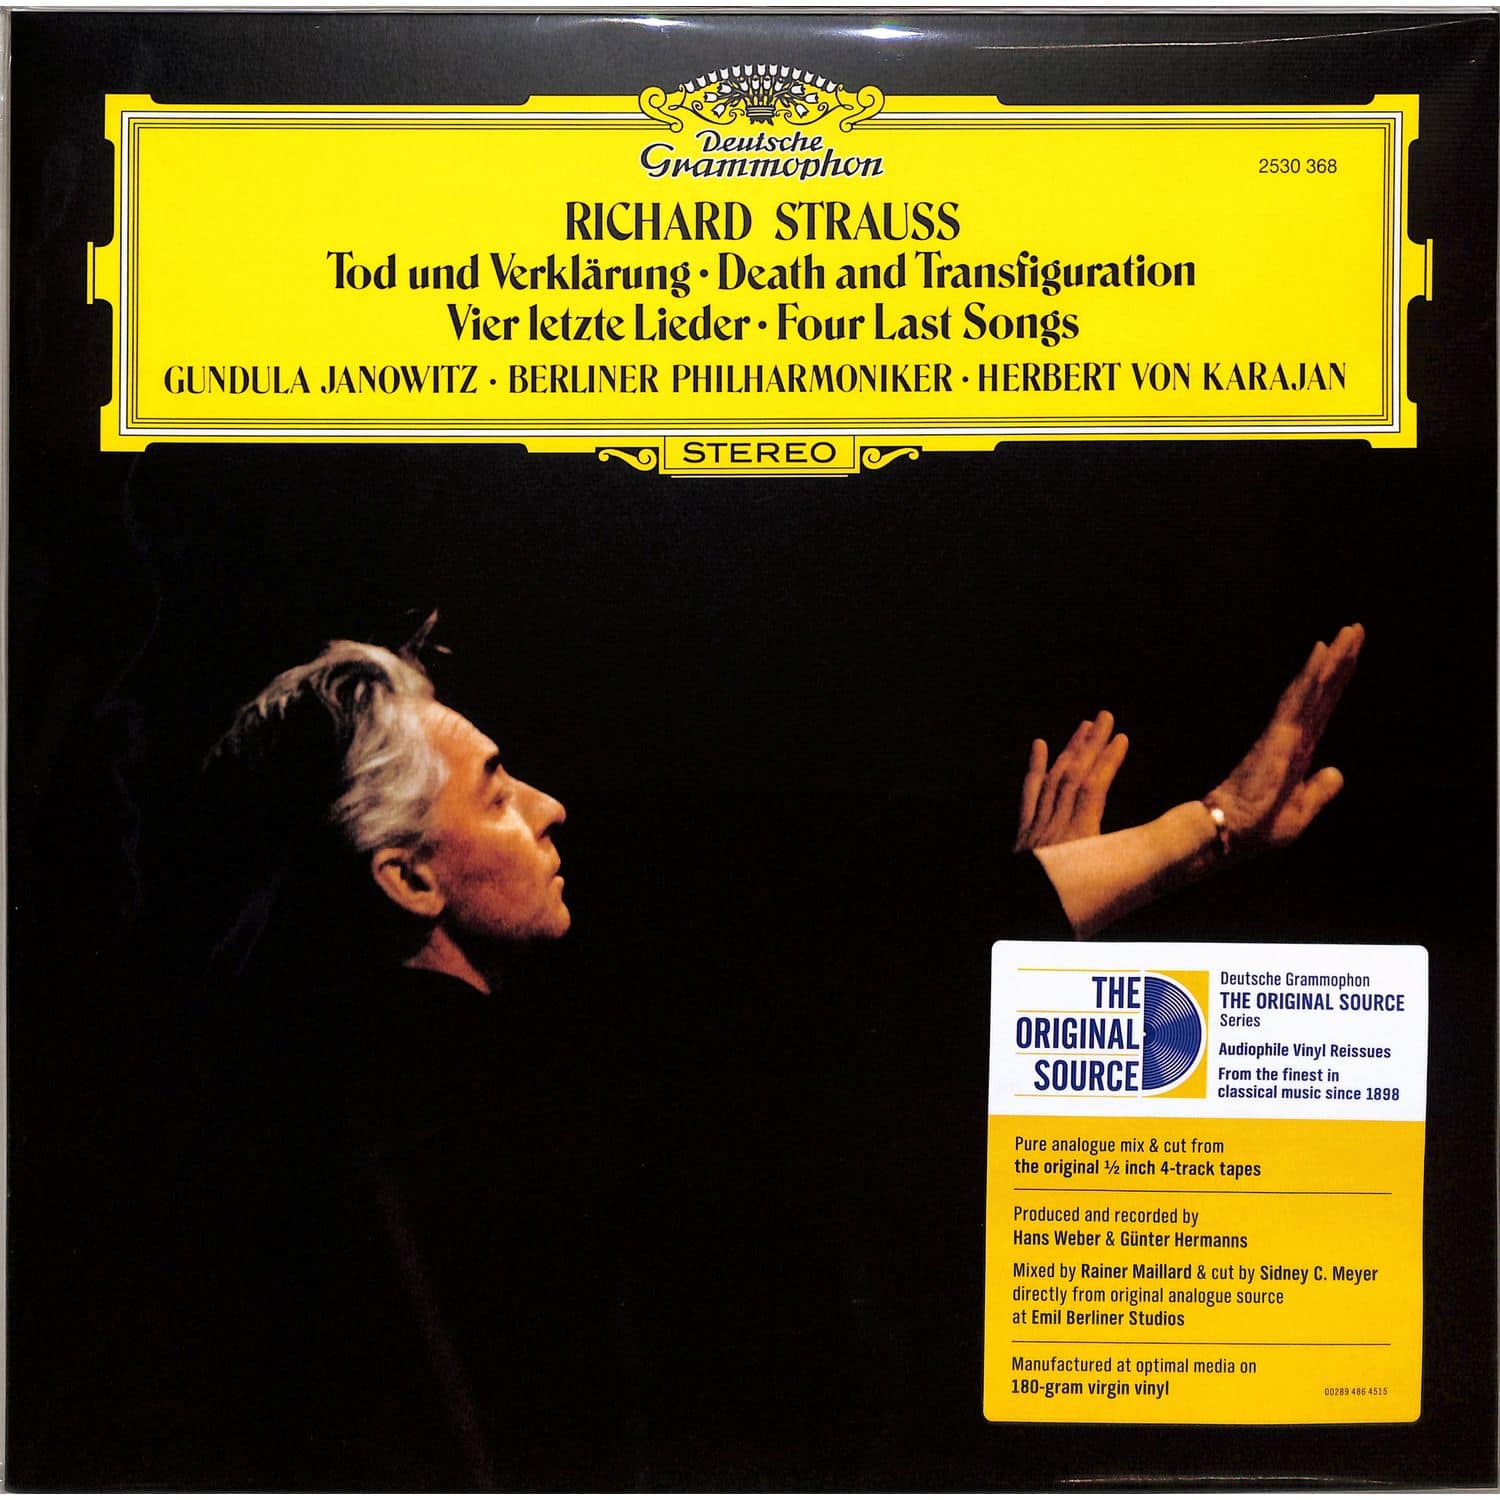 Janowitz / Berliner Philharmoniker / Karajan - R. STRAUSS: VIER LETZTE LIEDER, TOD UND VERKLRUNG 